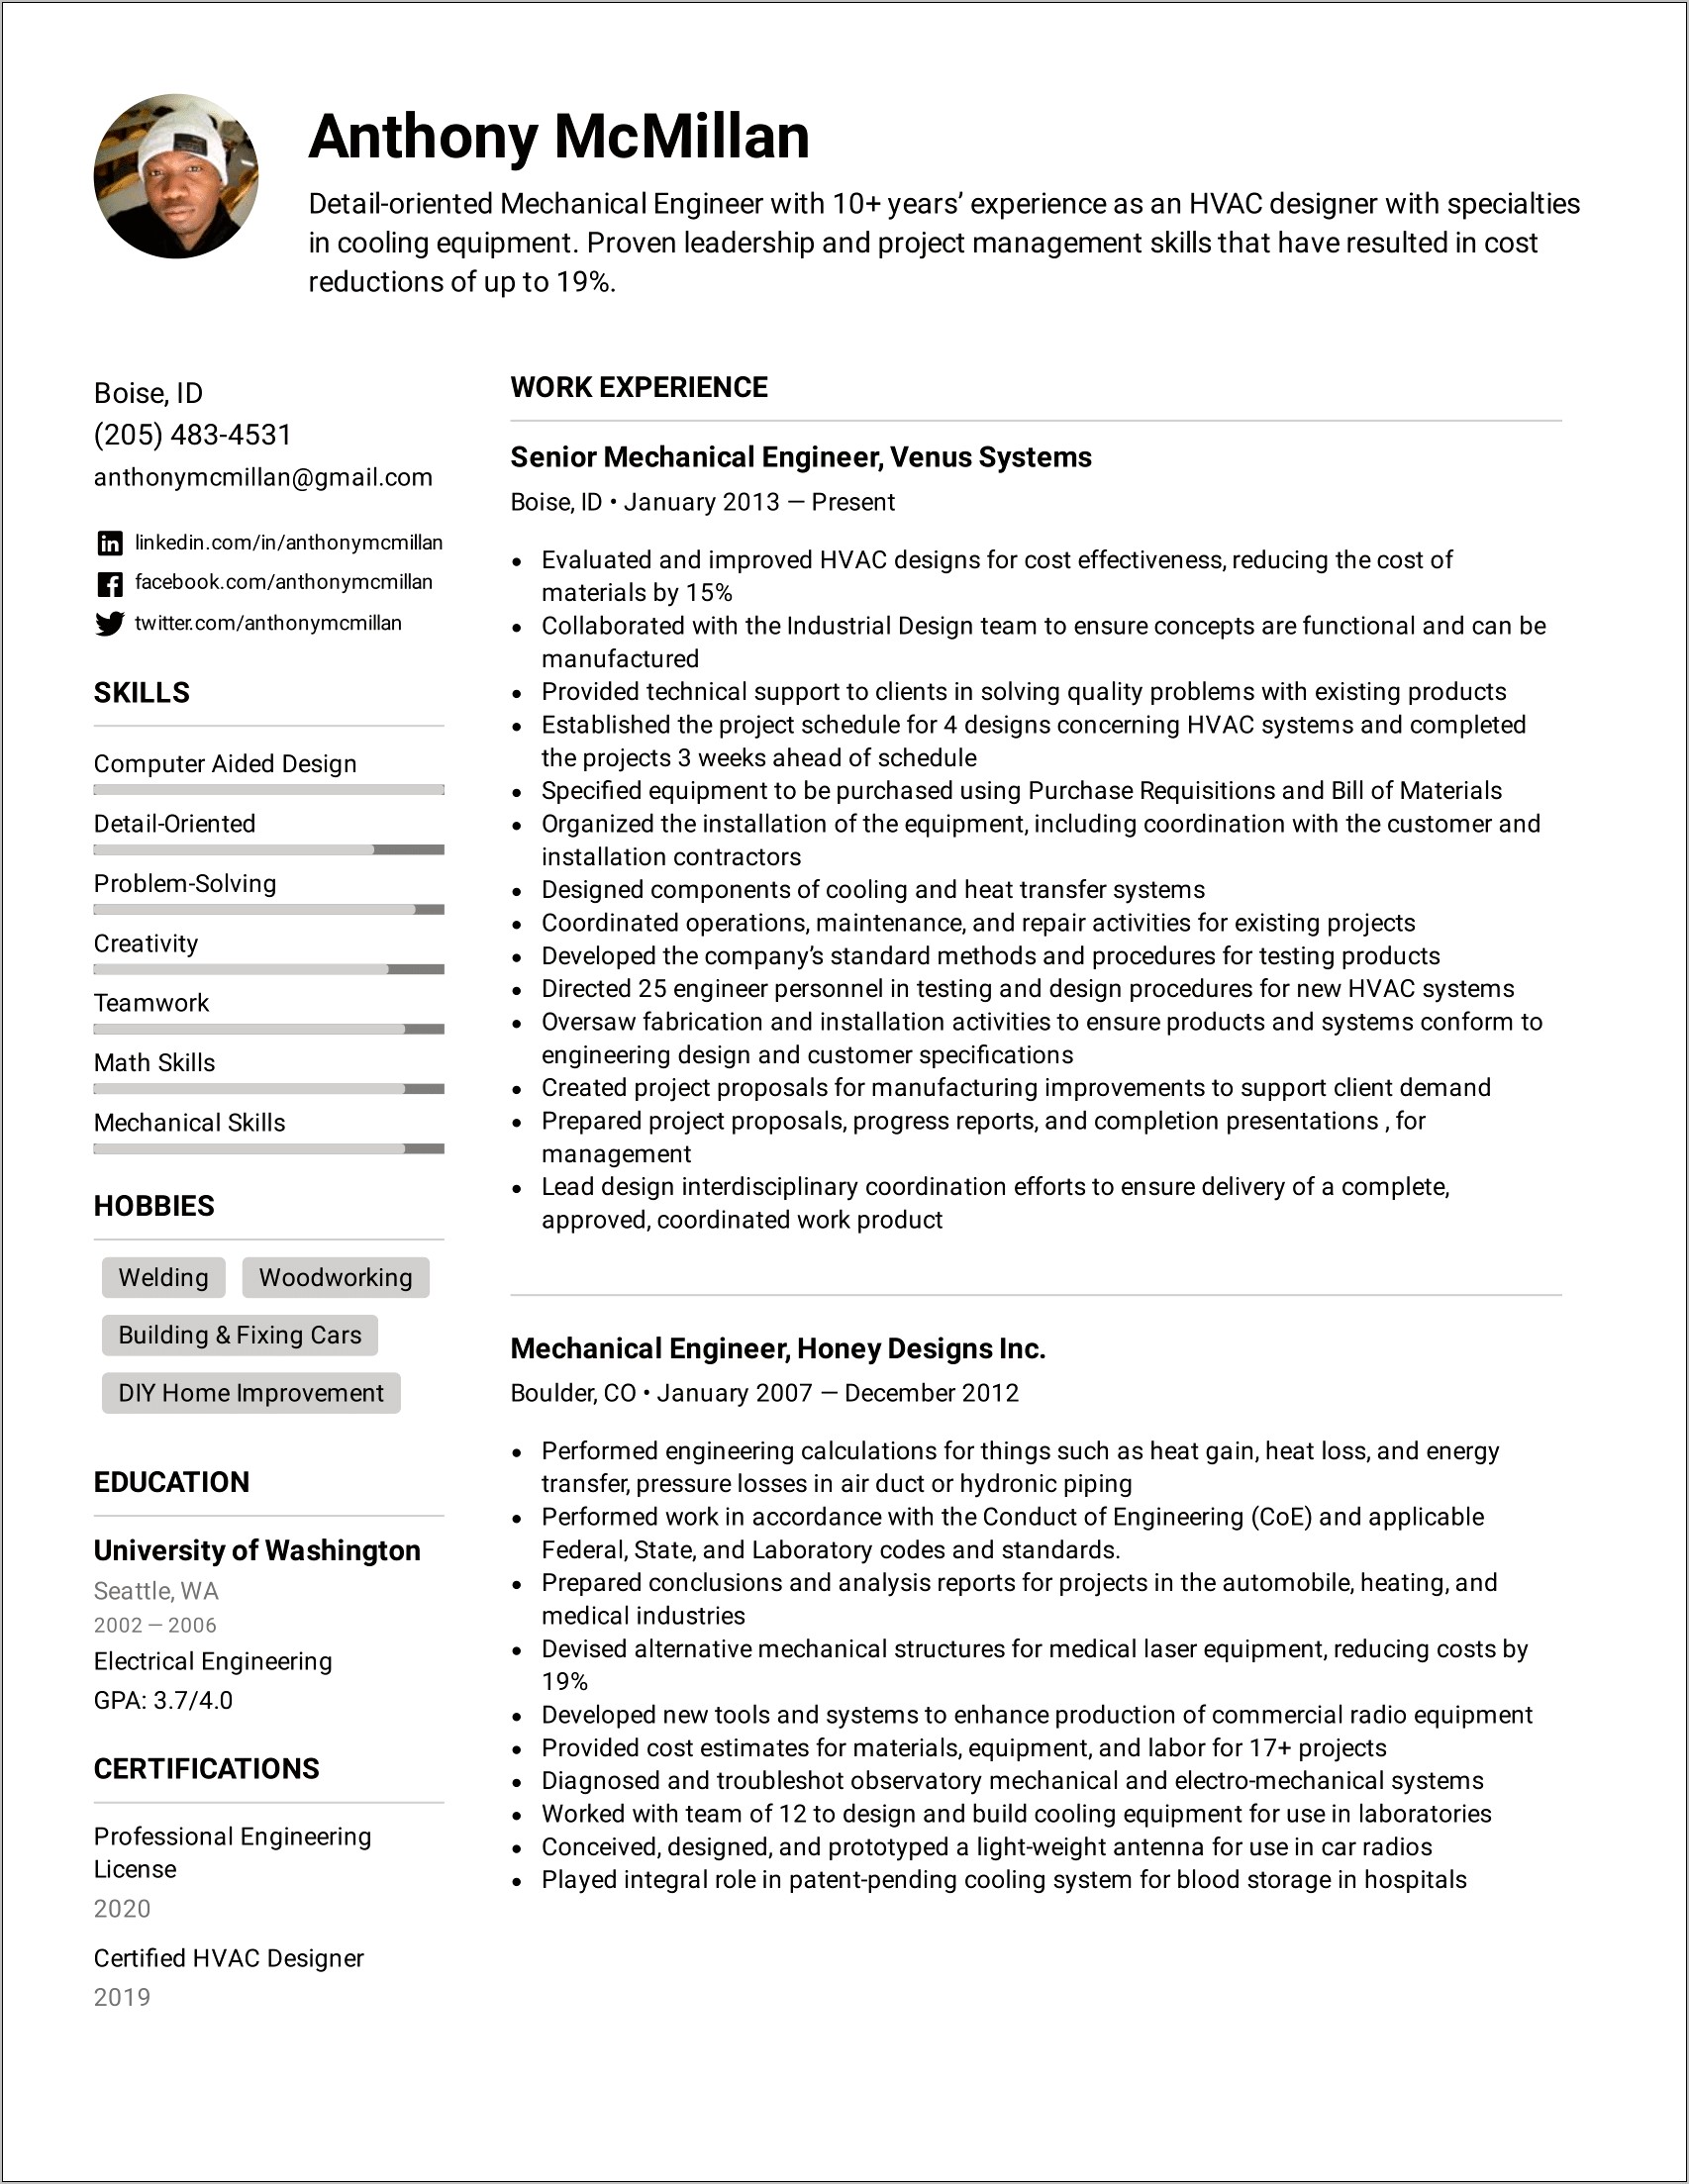 List Of Computer Skills On Resume